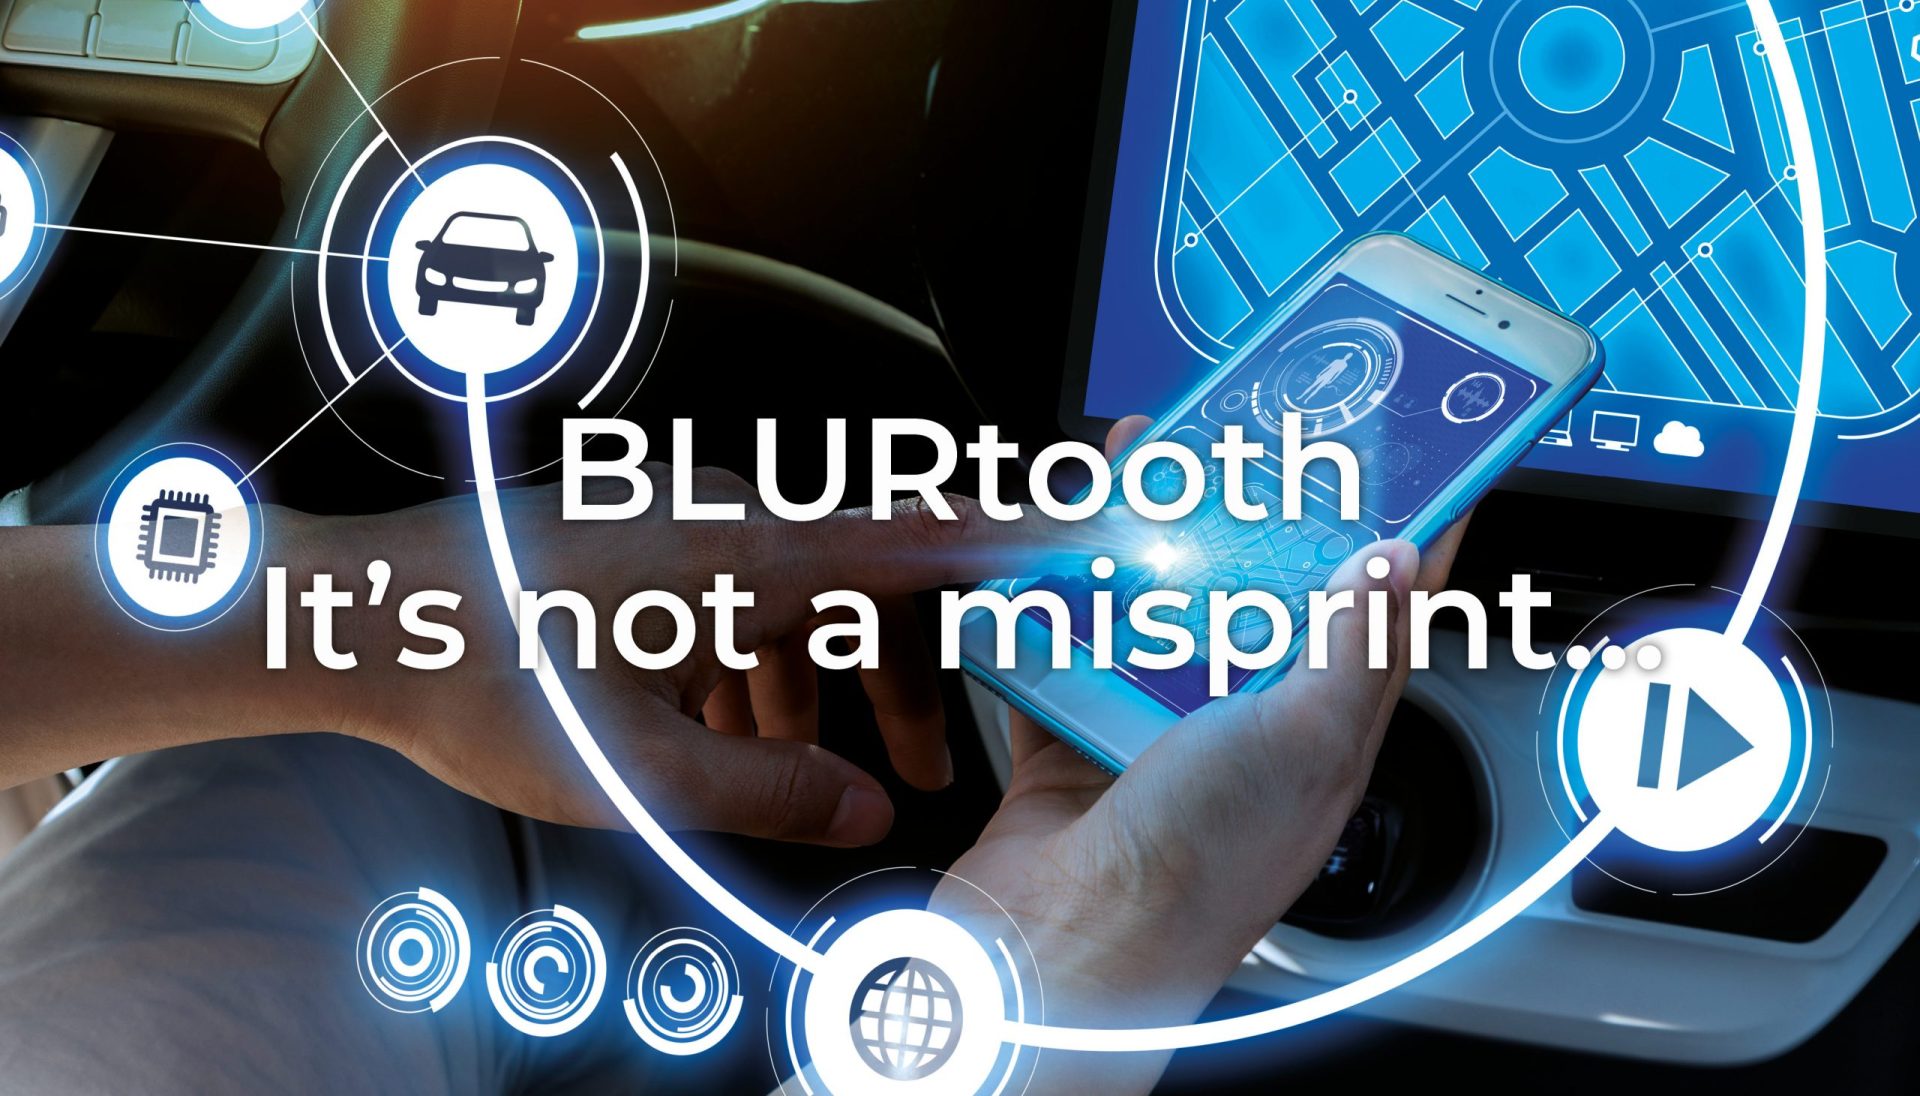 BLURtooth – it’s not a misprint